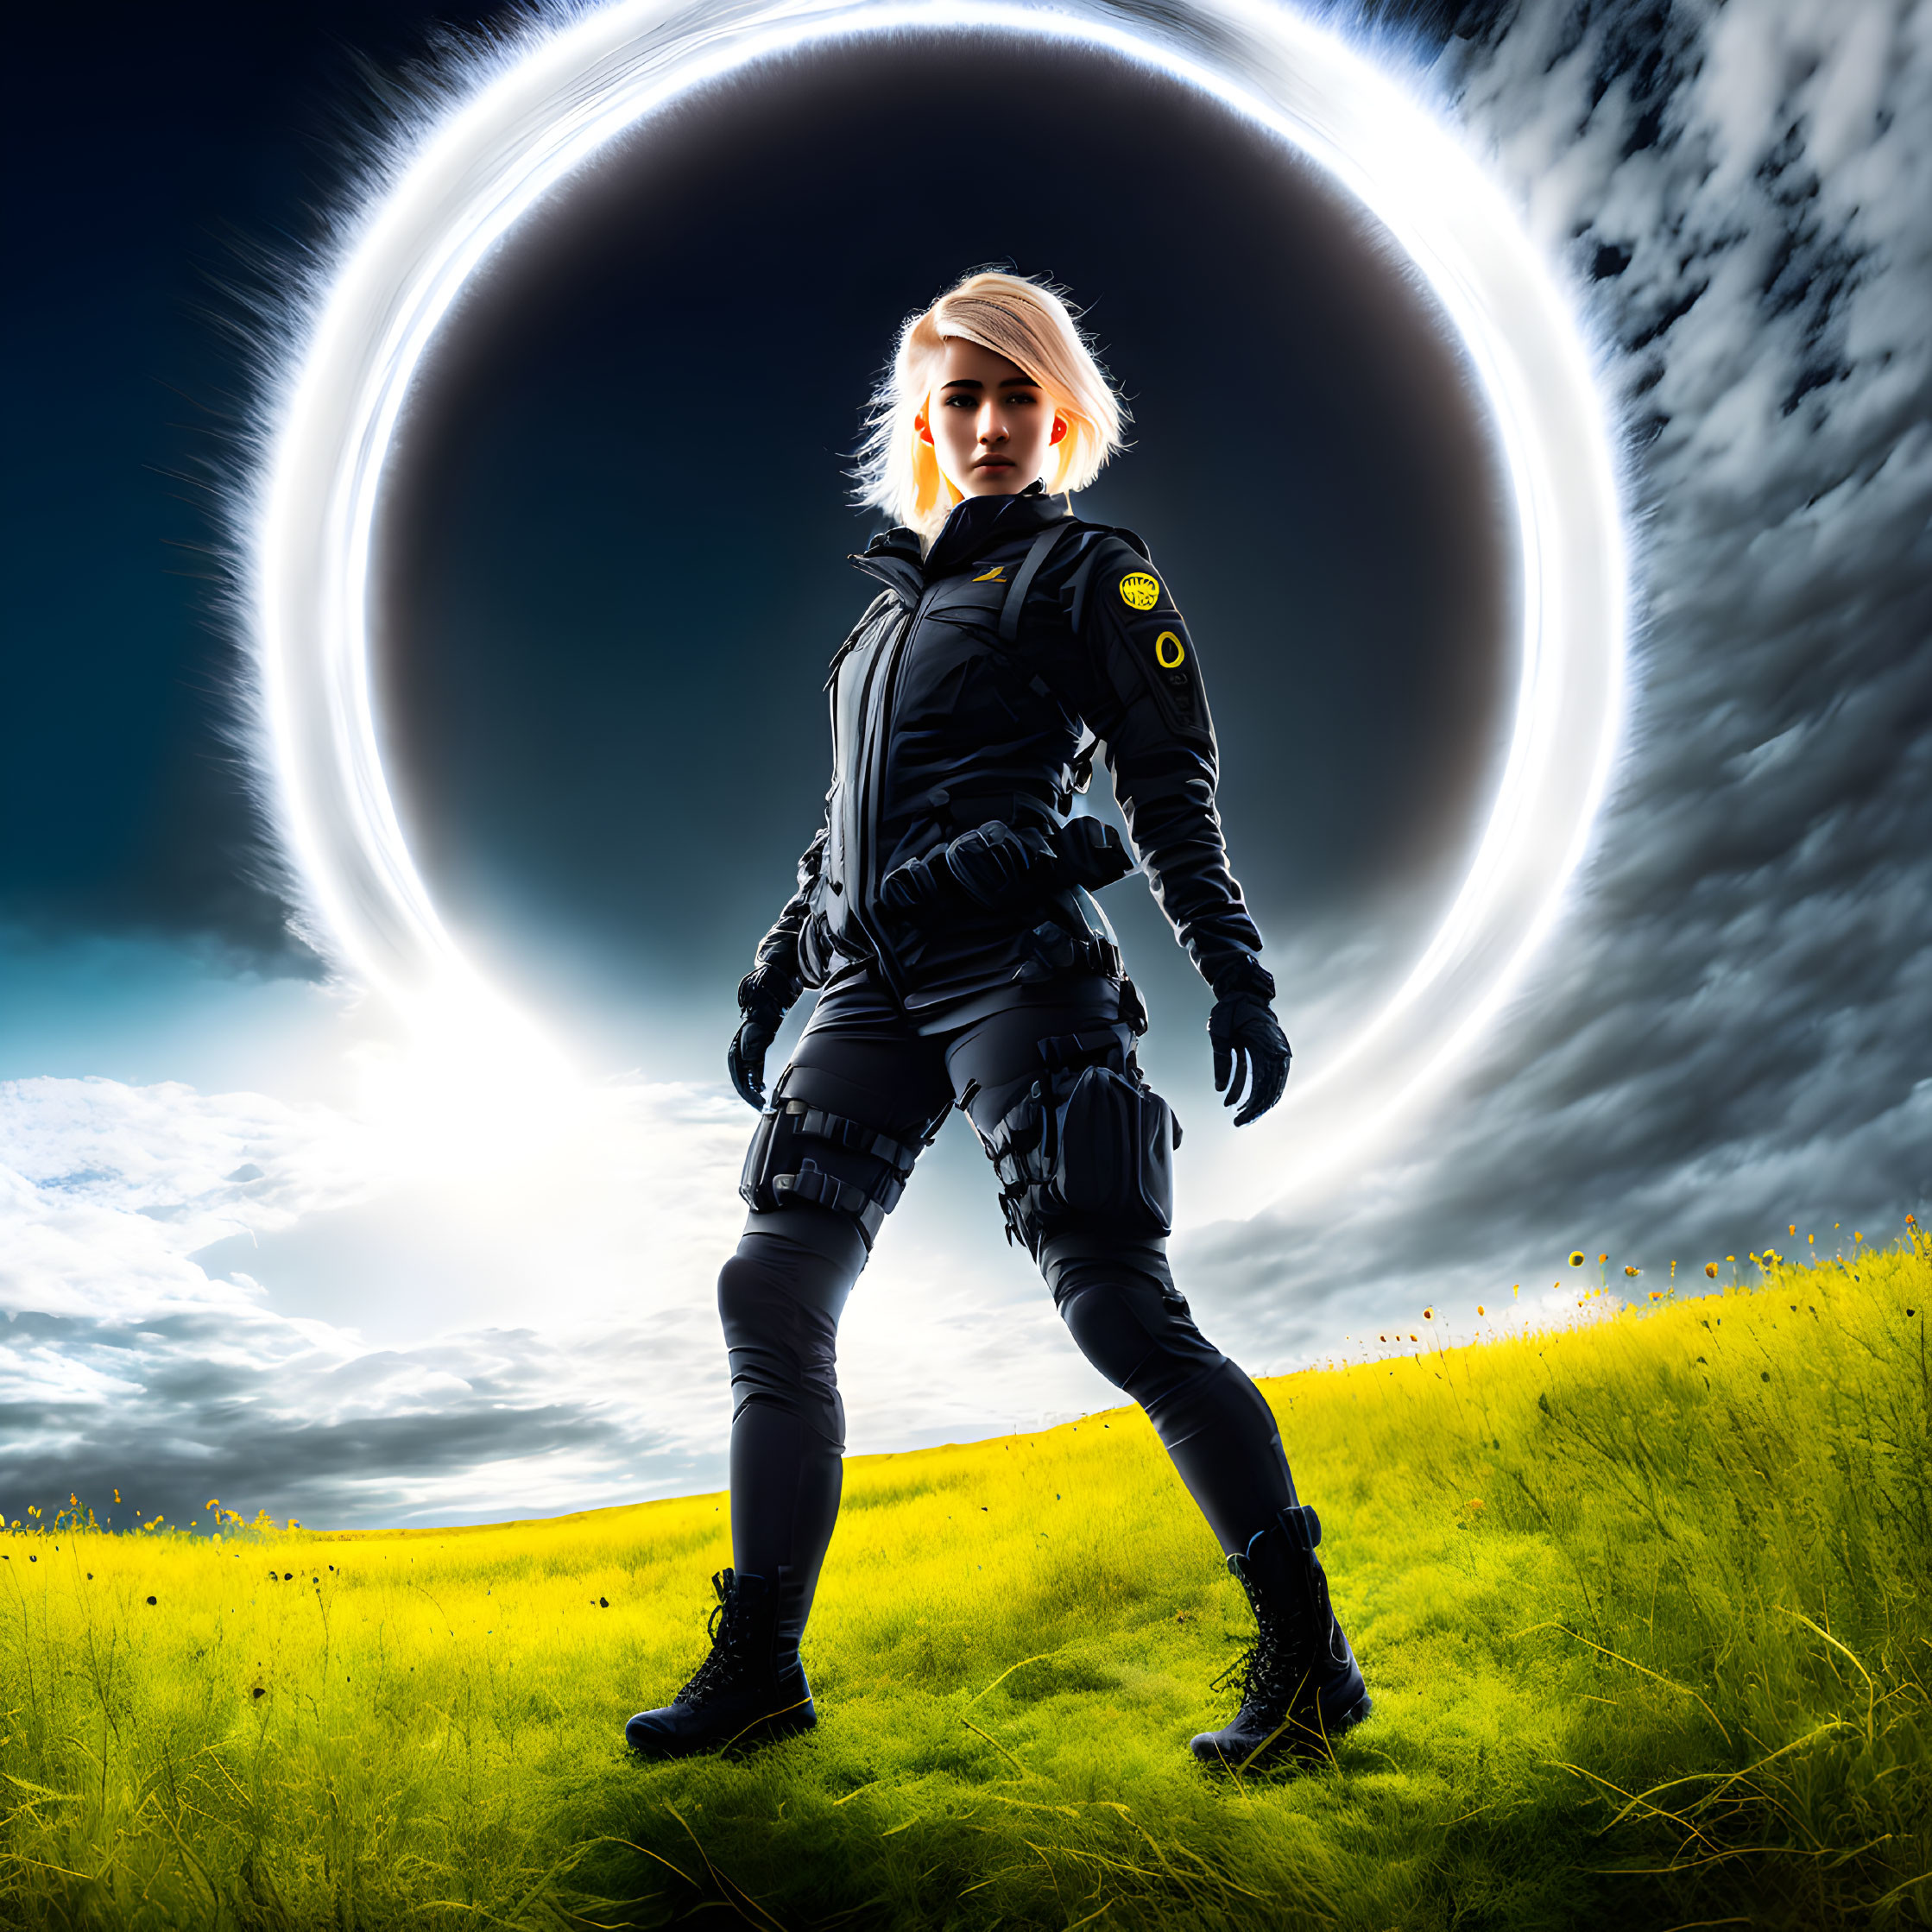 Confident person in futuristic black uniform in dramatic eclipse scene